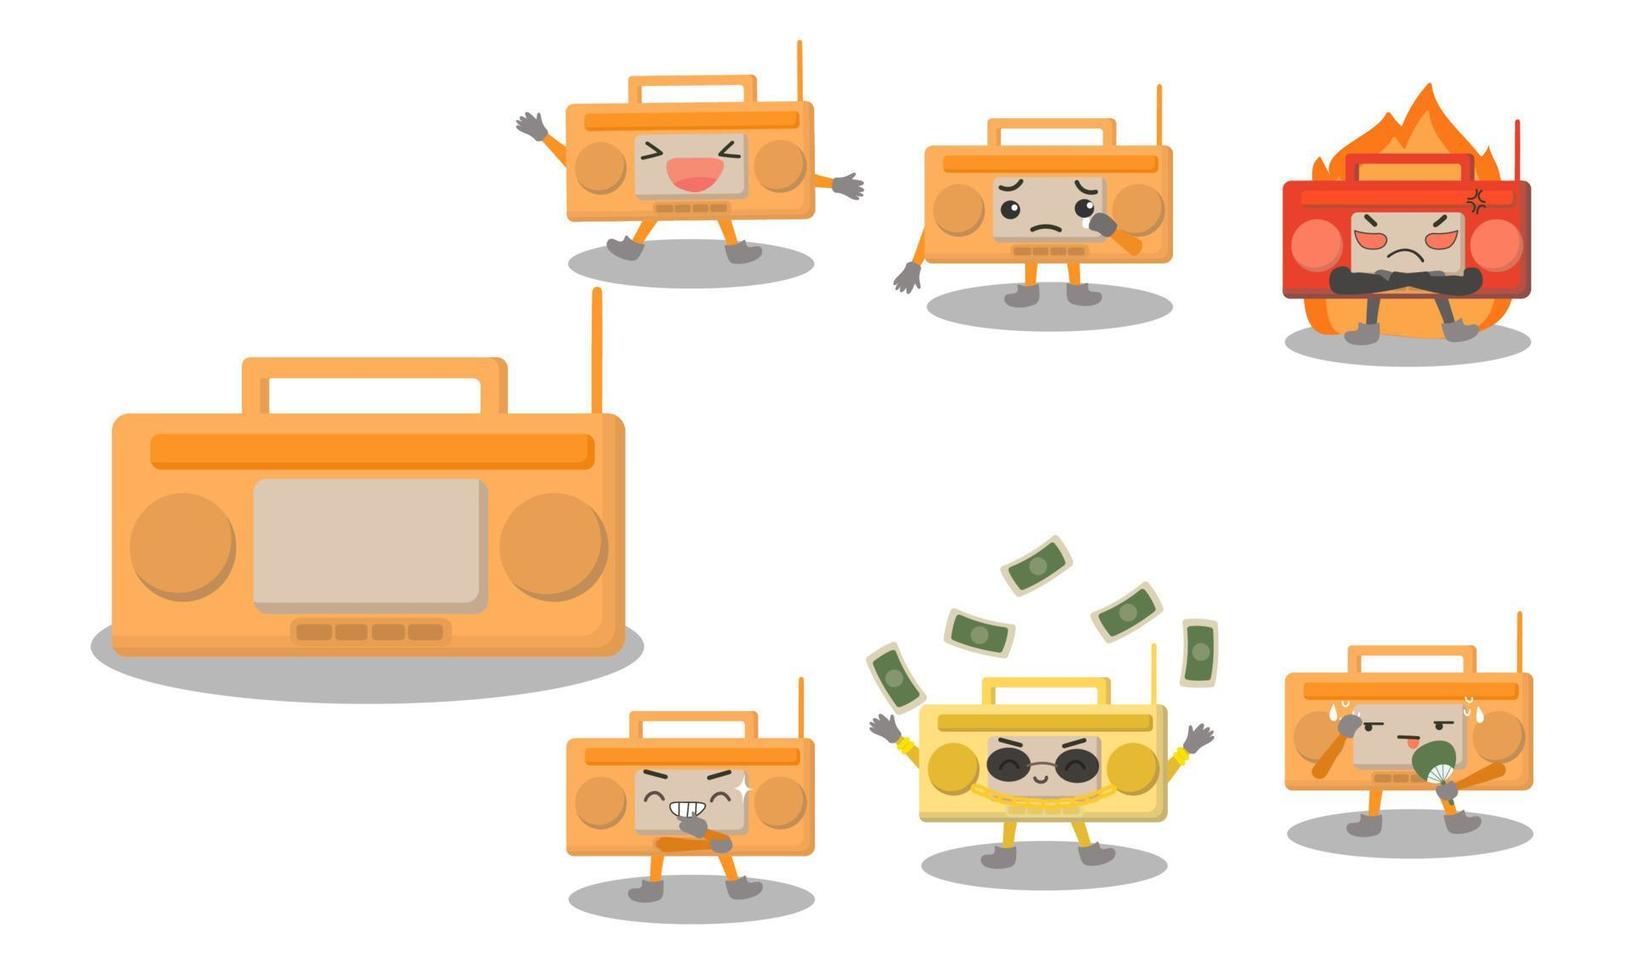 personaggi dei cartoni animati del transistor radiofonico in varie pose ed emotivi come felici, tristi, arrabbiati, ridenti, ricchi, caldi. vettore